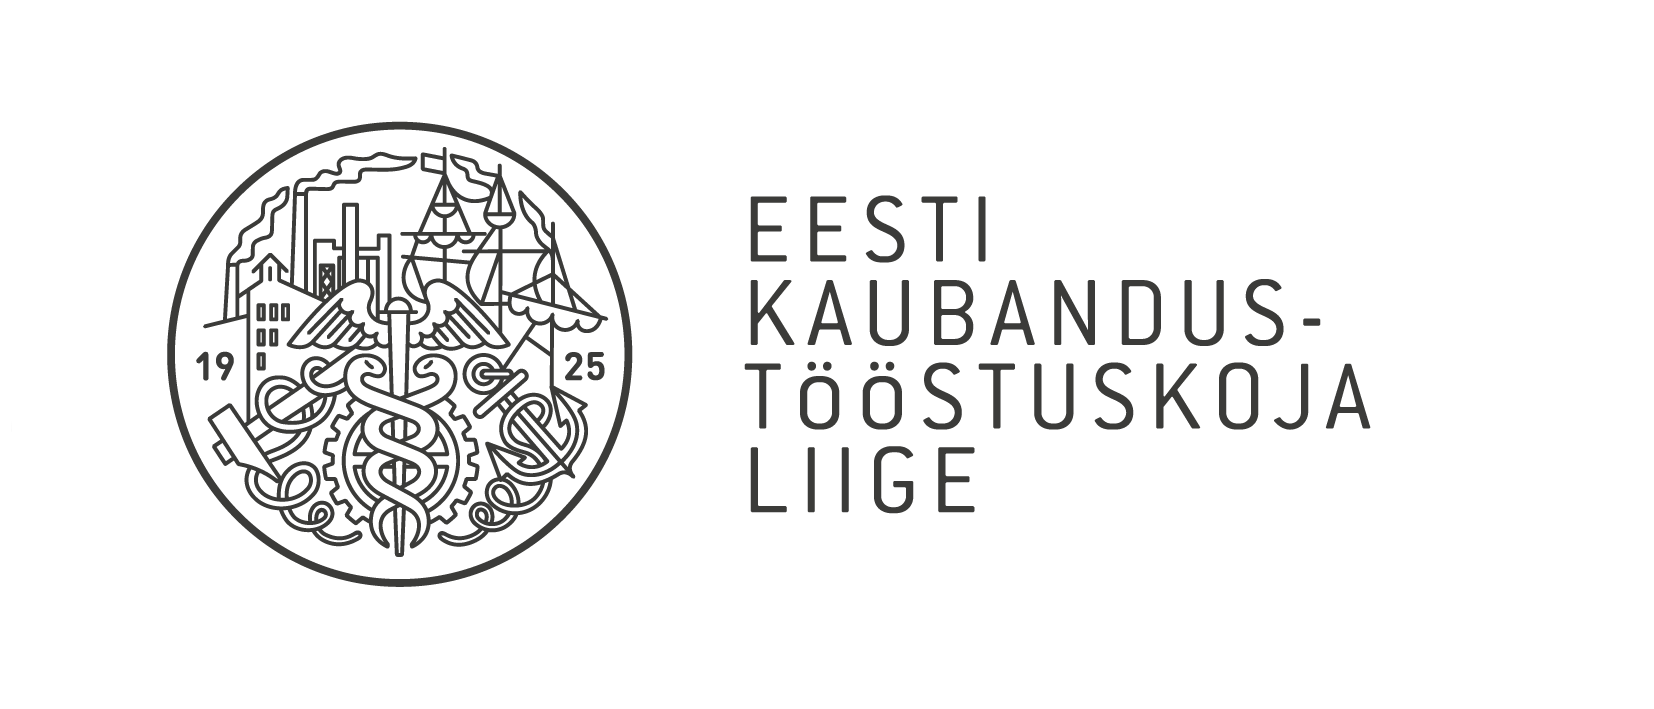 Kukkumiskaitse on Eesti Kaubdanus-Tööstuskoja liige.